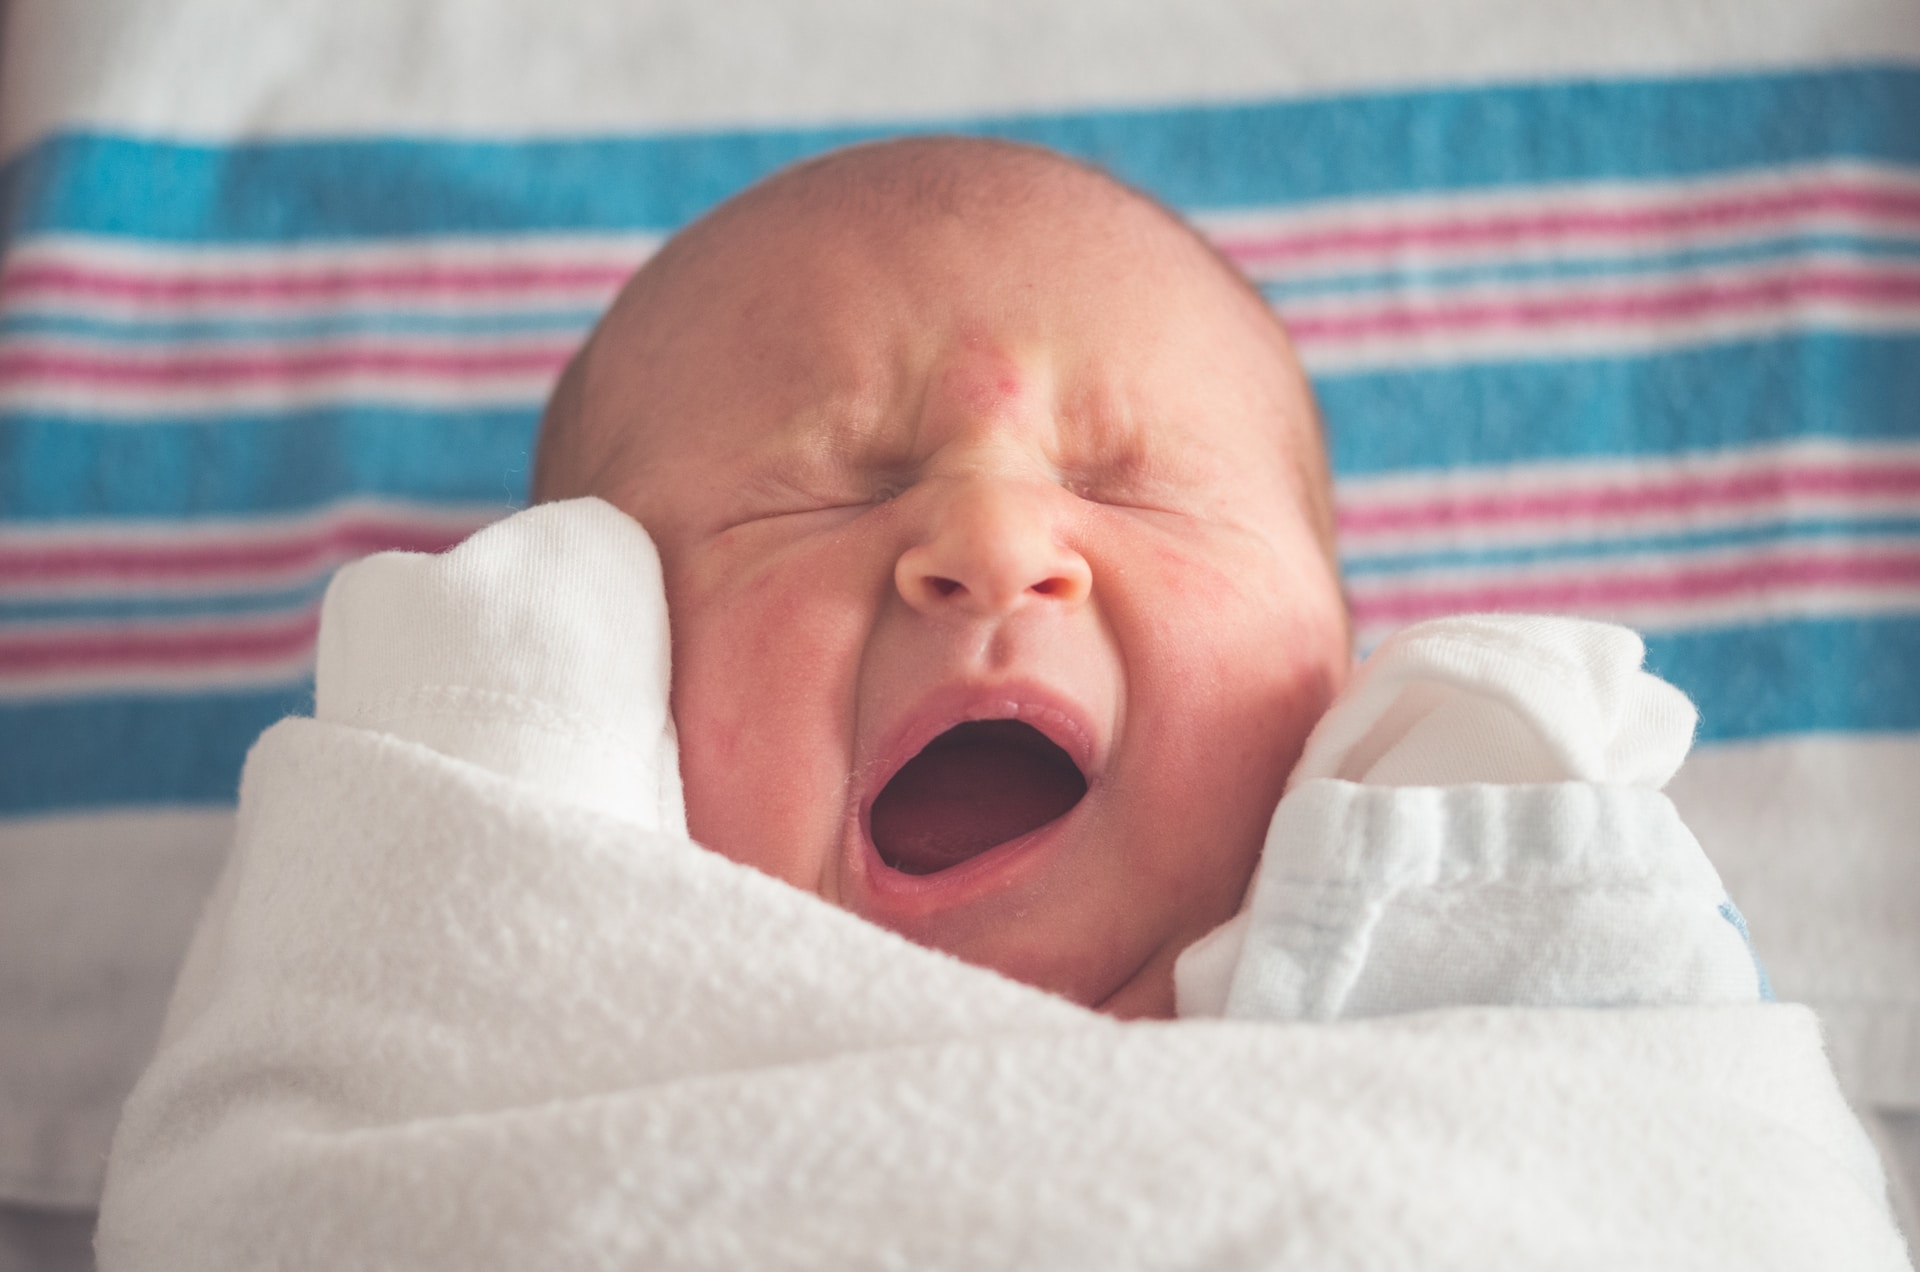 come abituare un neonato a dormire senza seno